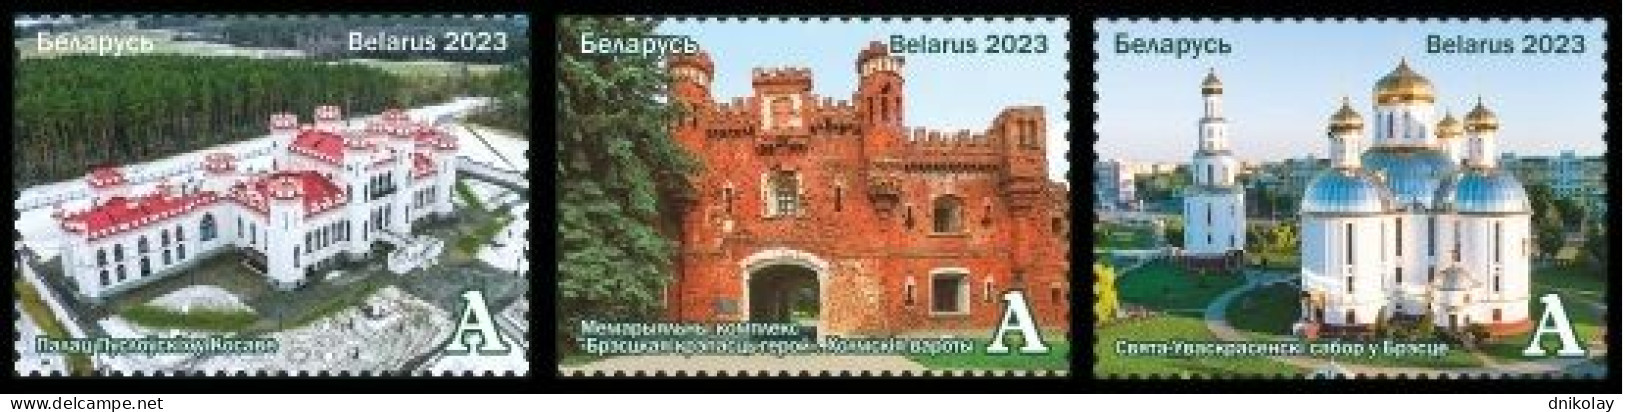 2023 1520 Belarus Belarusian Land - Brest Region MNH - Belarus